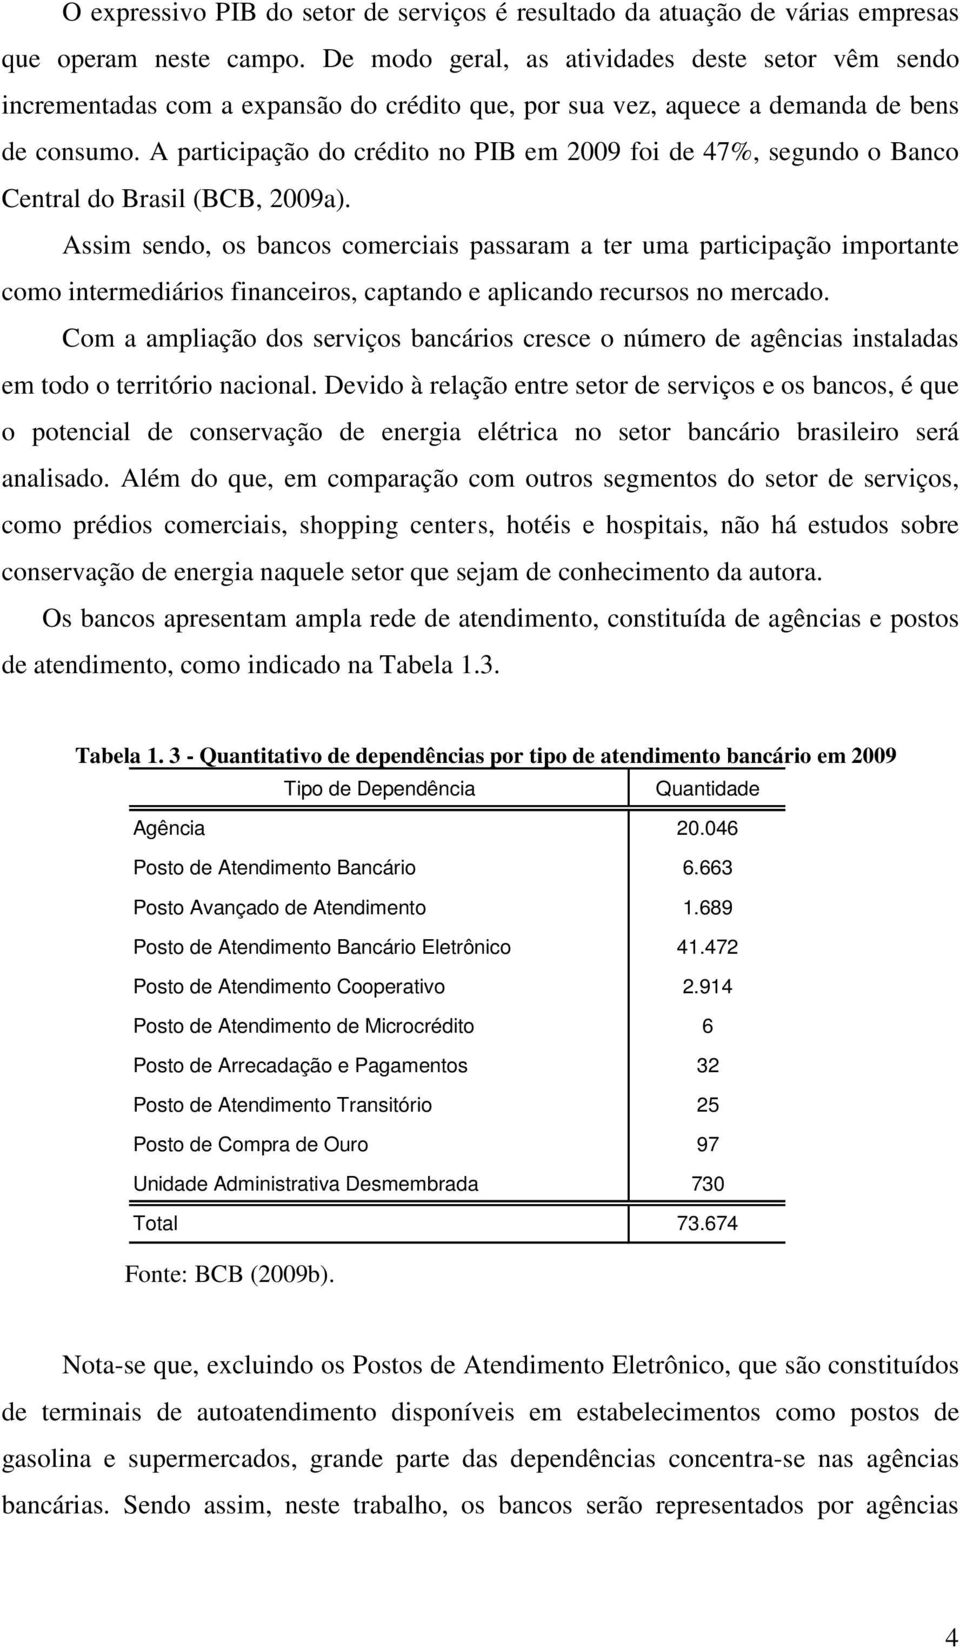 A participação do crédito no PIB em 2009 foi de 47%, segundo o Banco Central do Brasil (BCB, 2009a).